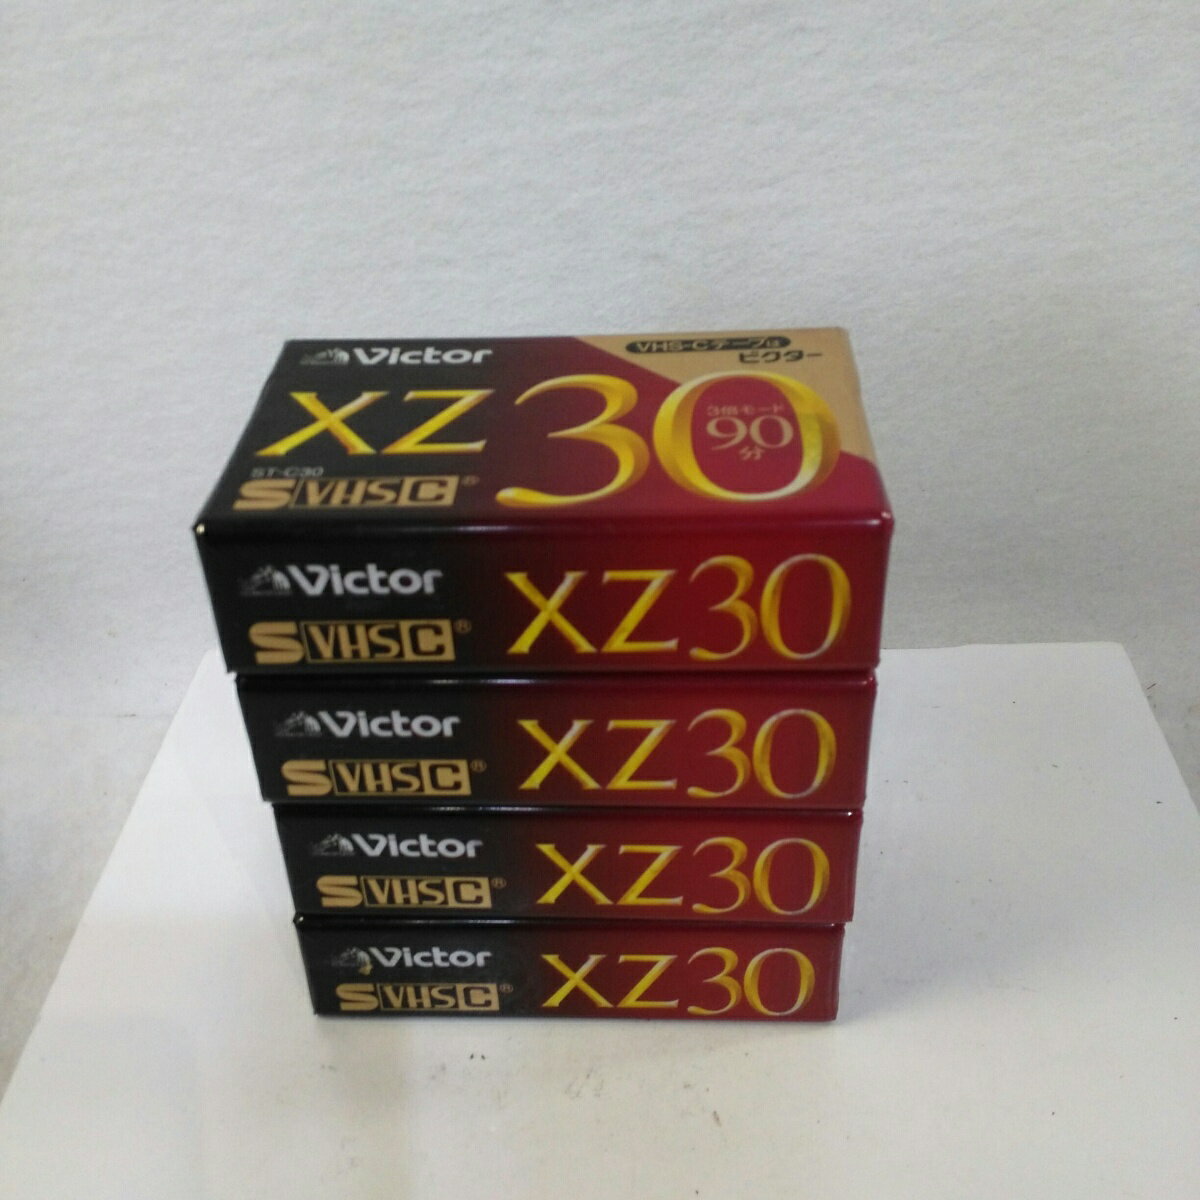 【未使用品】ビクター 30分 S-VHS-C ビデオテープ ST-C30XZD×4本セット【送料無料】【メール便でお送りします】代引き不可